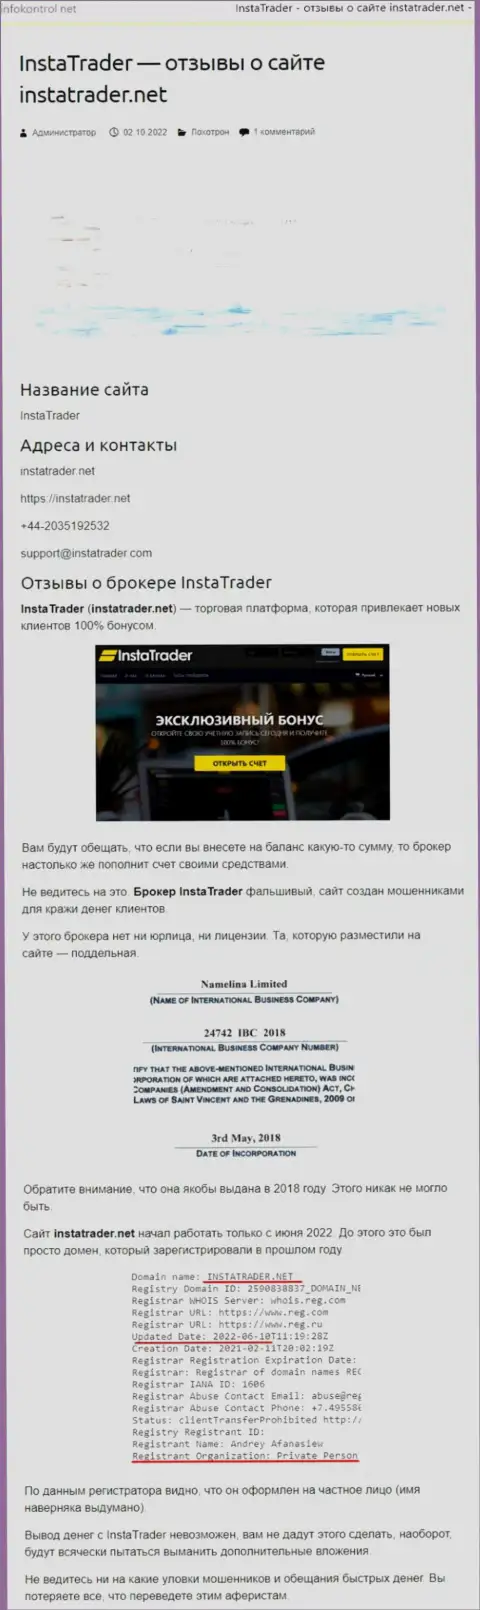 InstaTrader Net - это организация, зарабатывающая на краже денежных средств собственных клиентов (обзор)